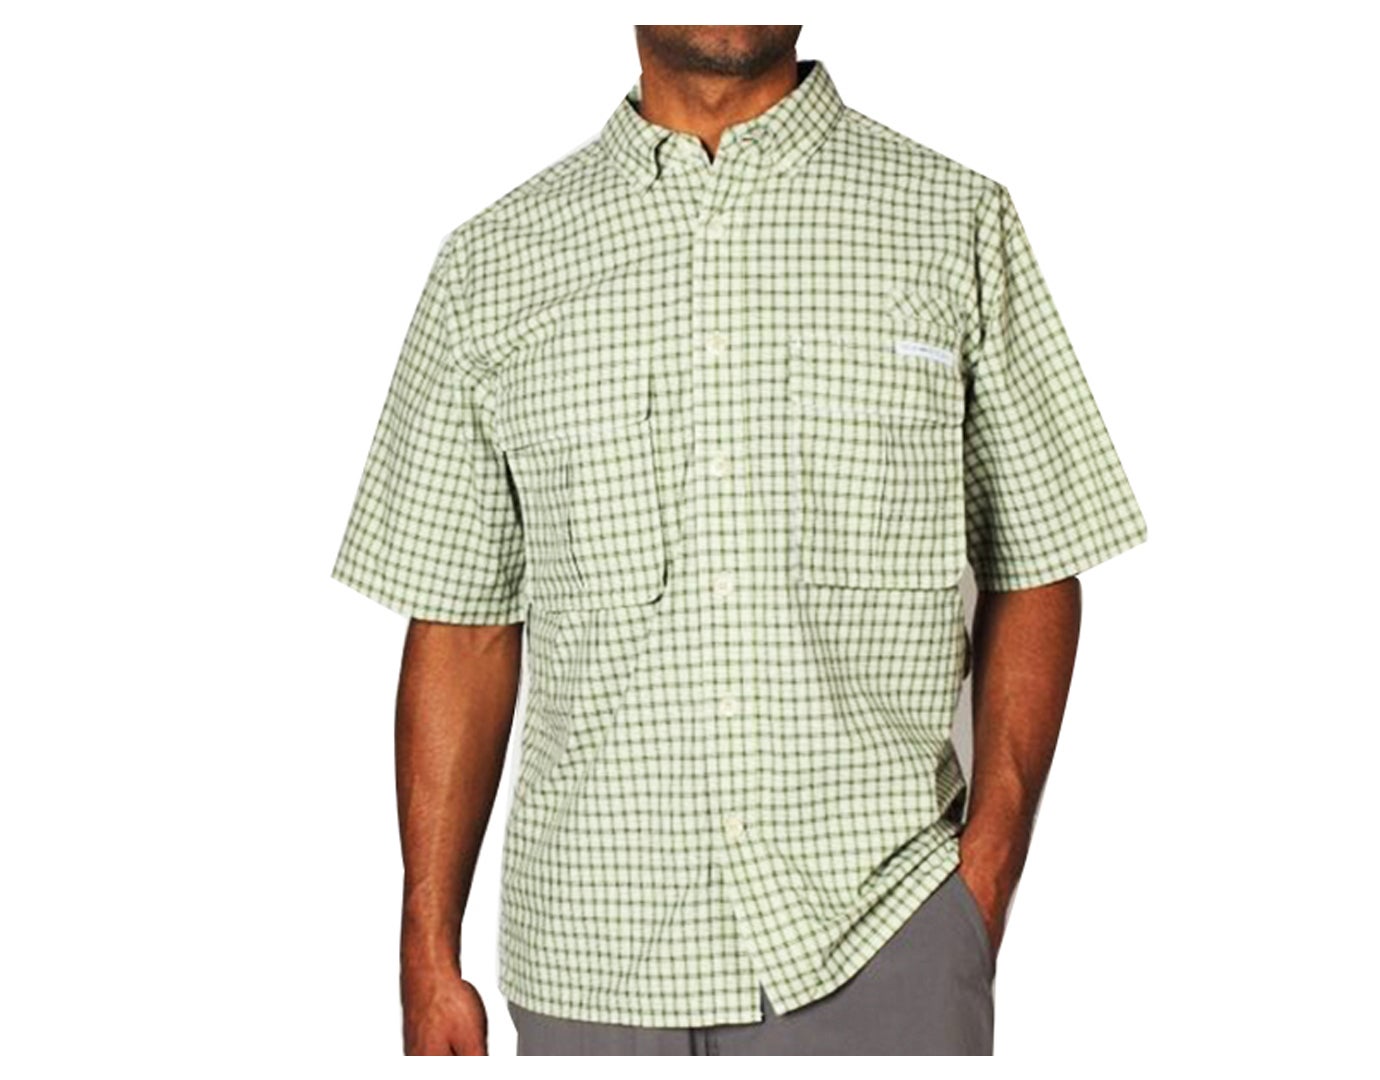 ExOfficio Mens Air Strip Micro Plaid Short Sleeve Shirt - Olive